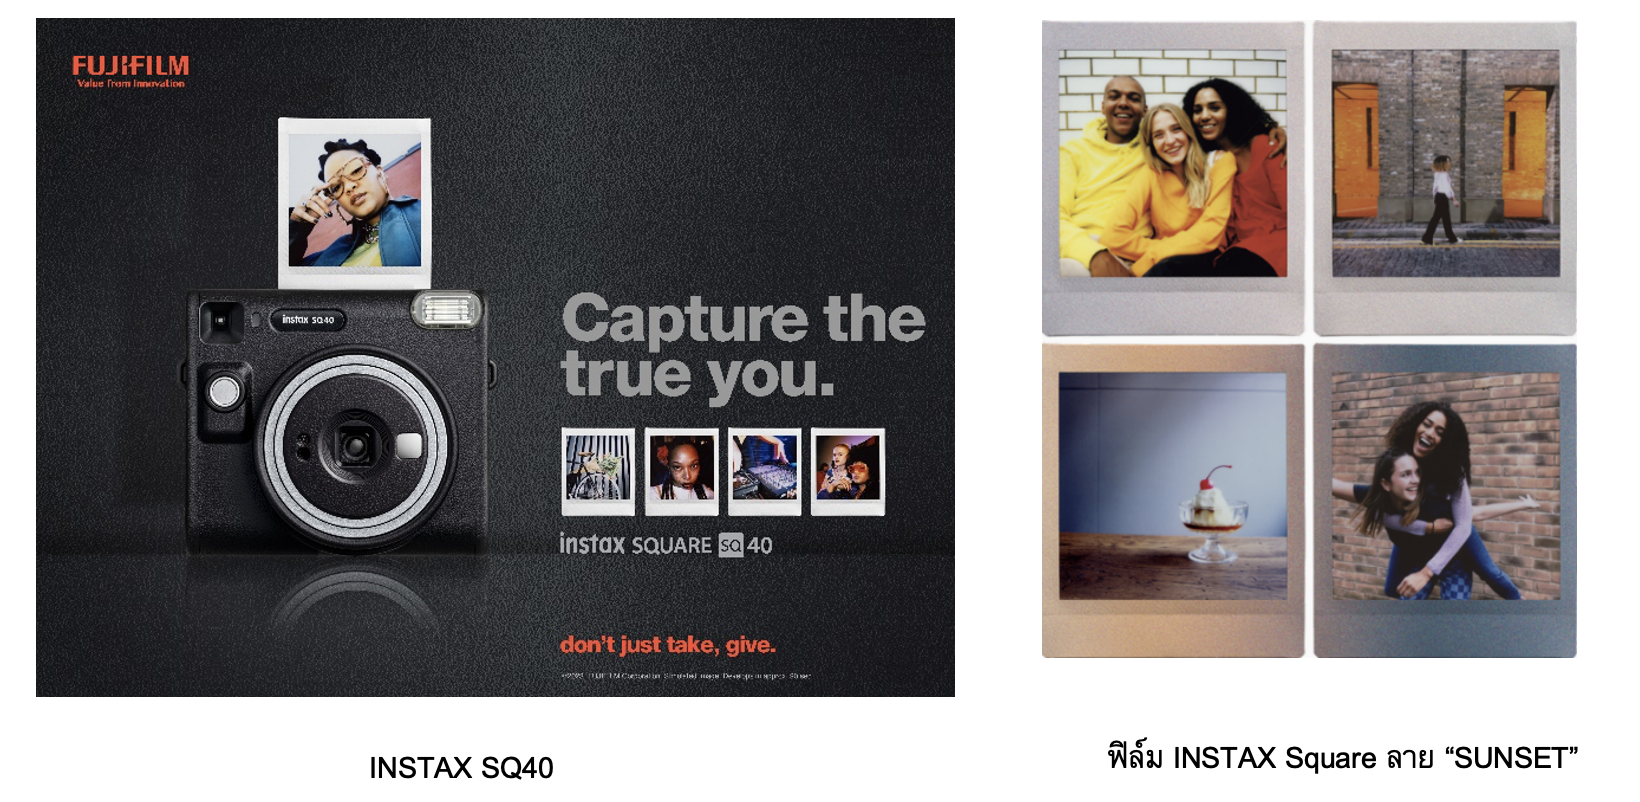 ฟูจิฟิล์ม ประเทศไทย เปิดตัว INSTAX SQUARE SQ40 กล้องอินสแตนท์สีดำทรงสี่เหลี่ยมสไตล์คลาสสิก